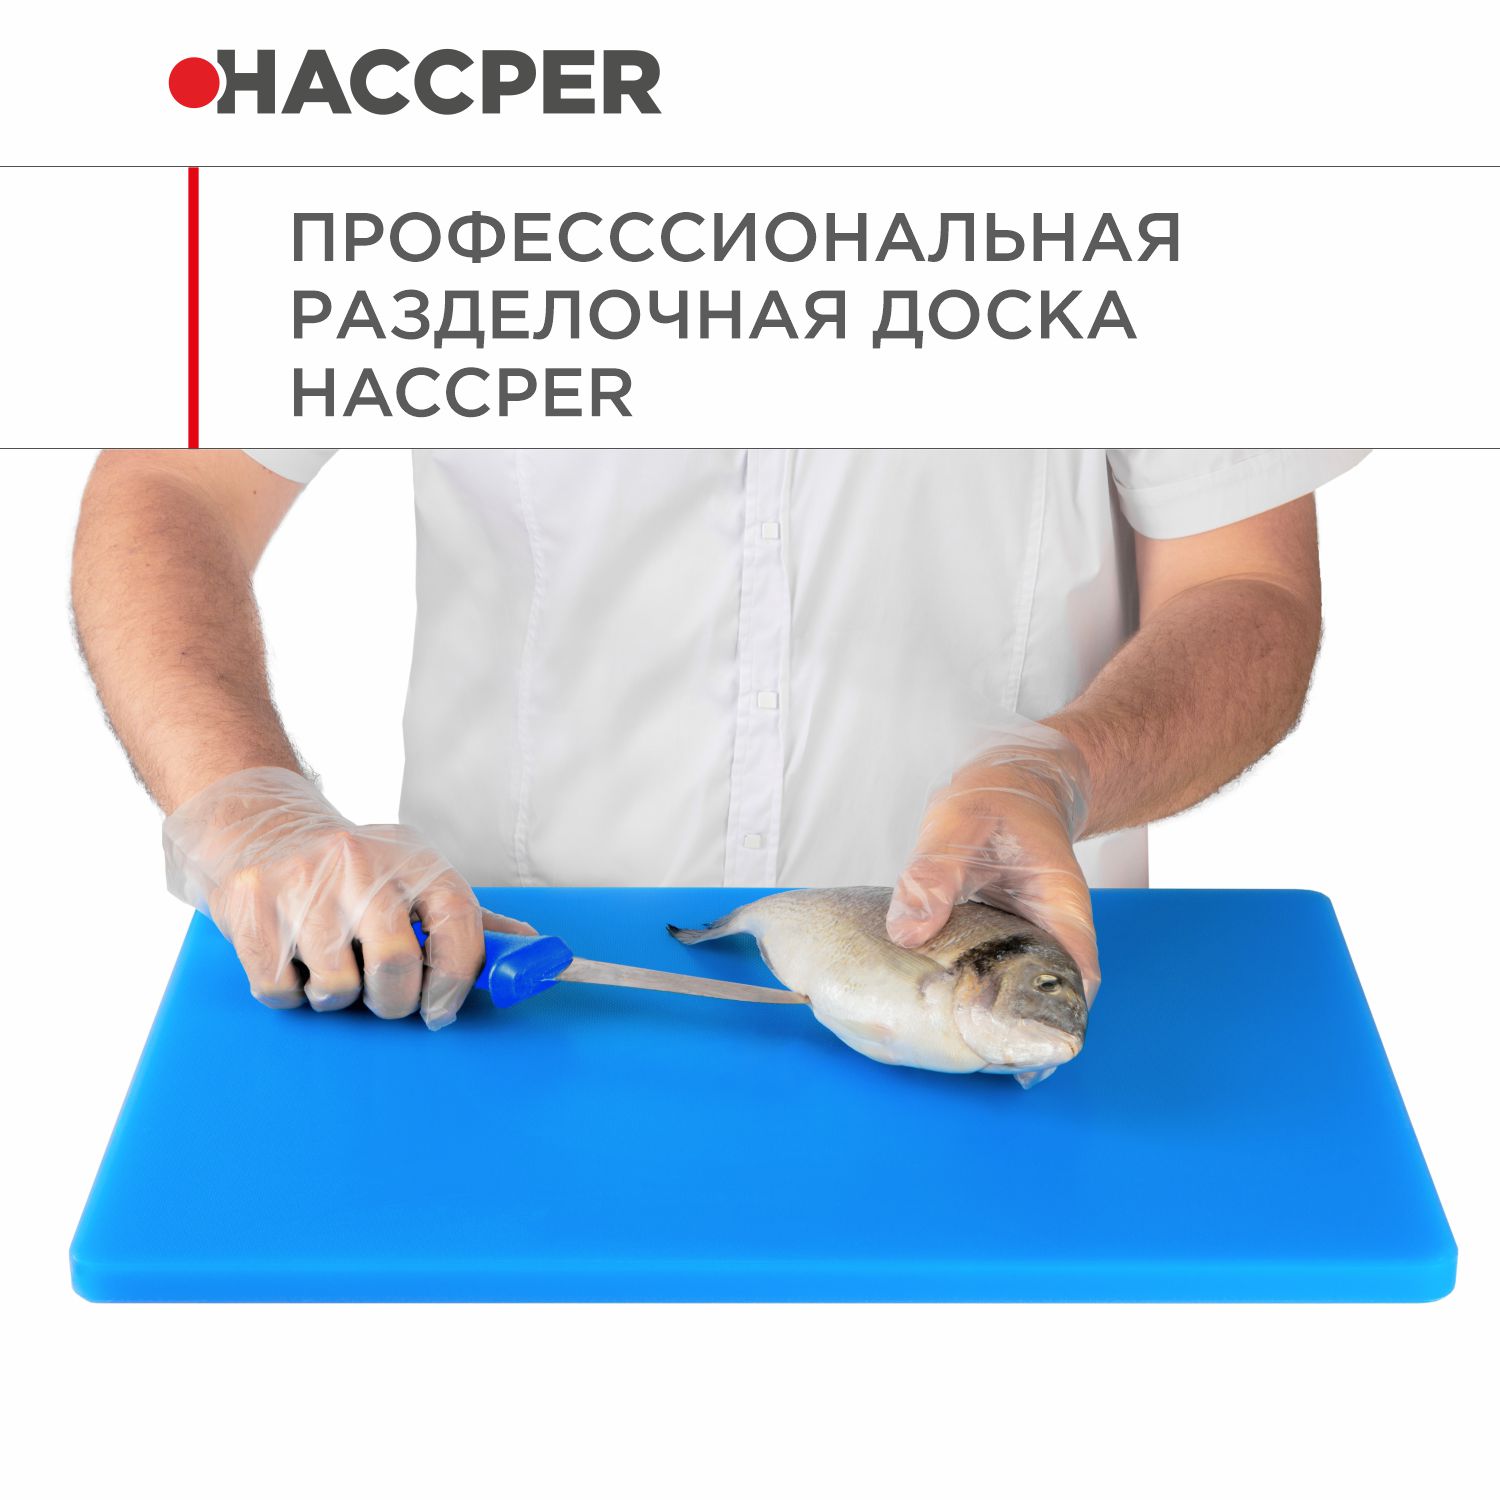 Профессиональная разделочная доска  HACCPER Gastra, синяя